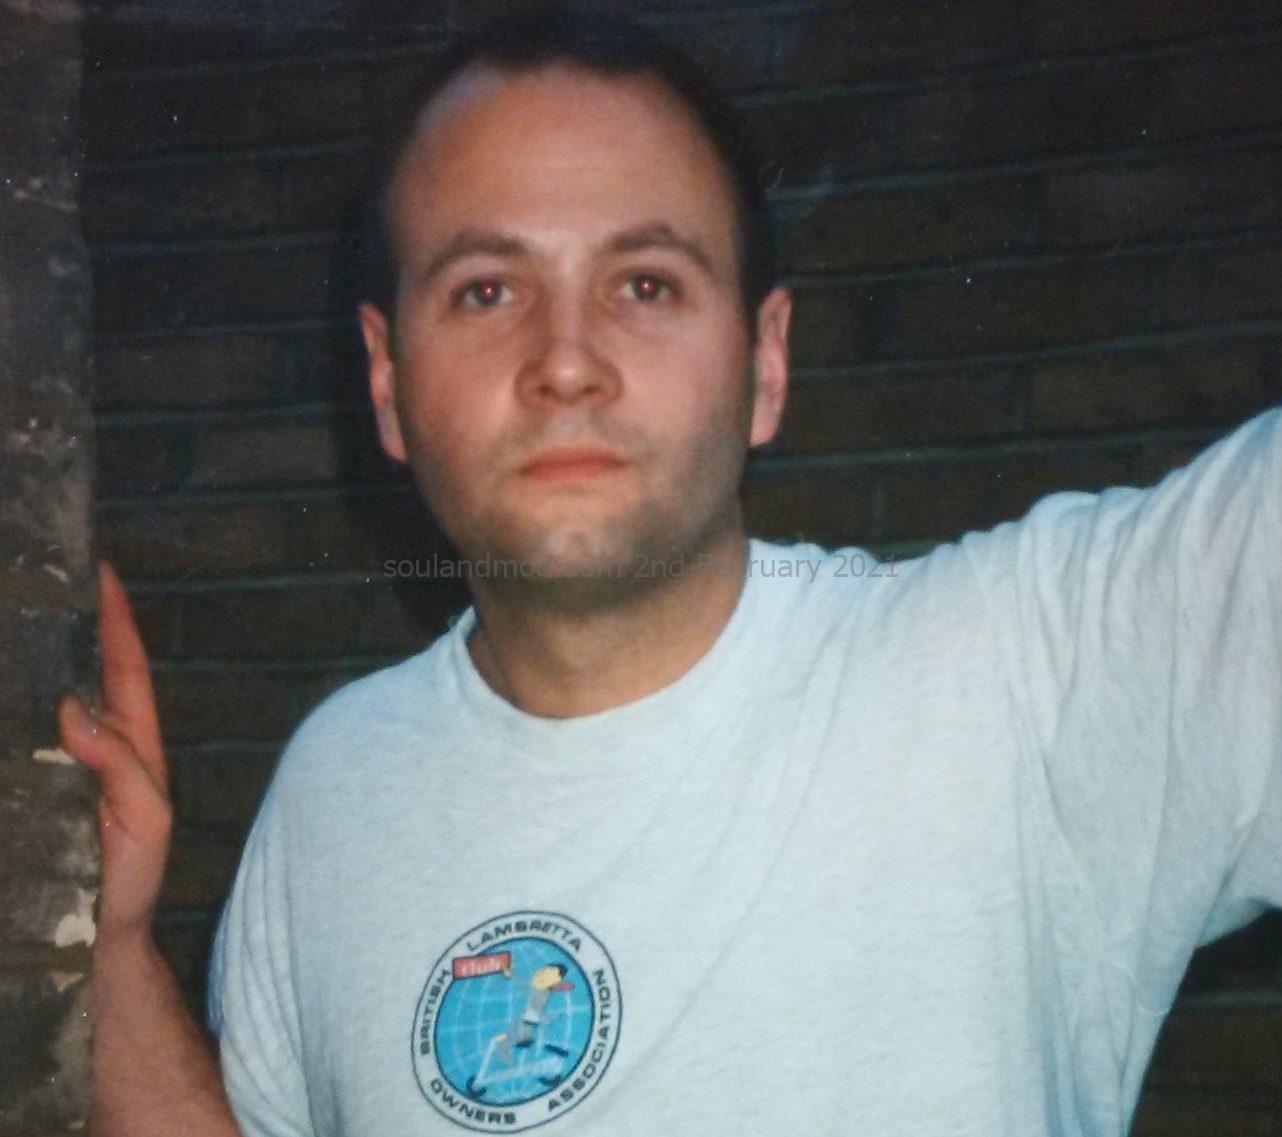 Paul Hallam, Lambretta T-Shirt - 1994